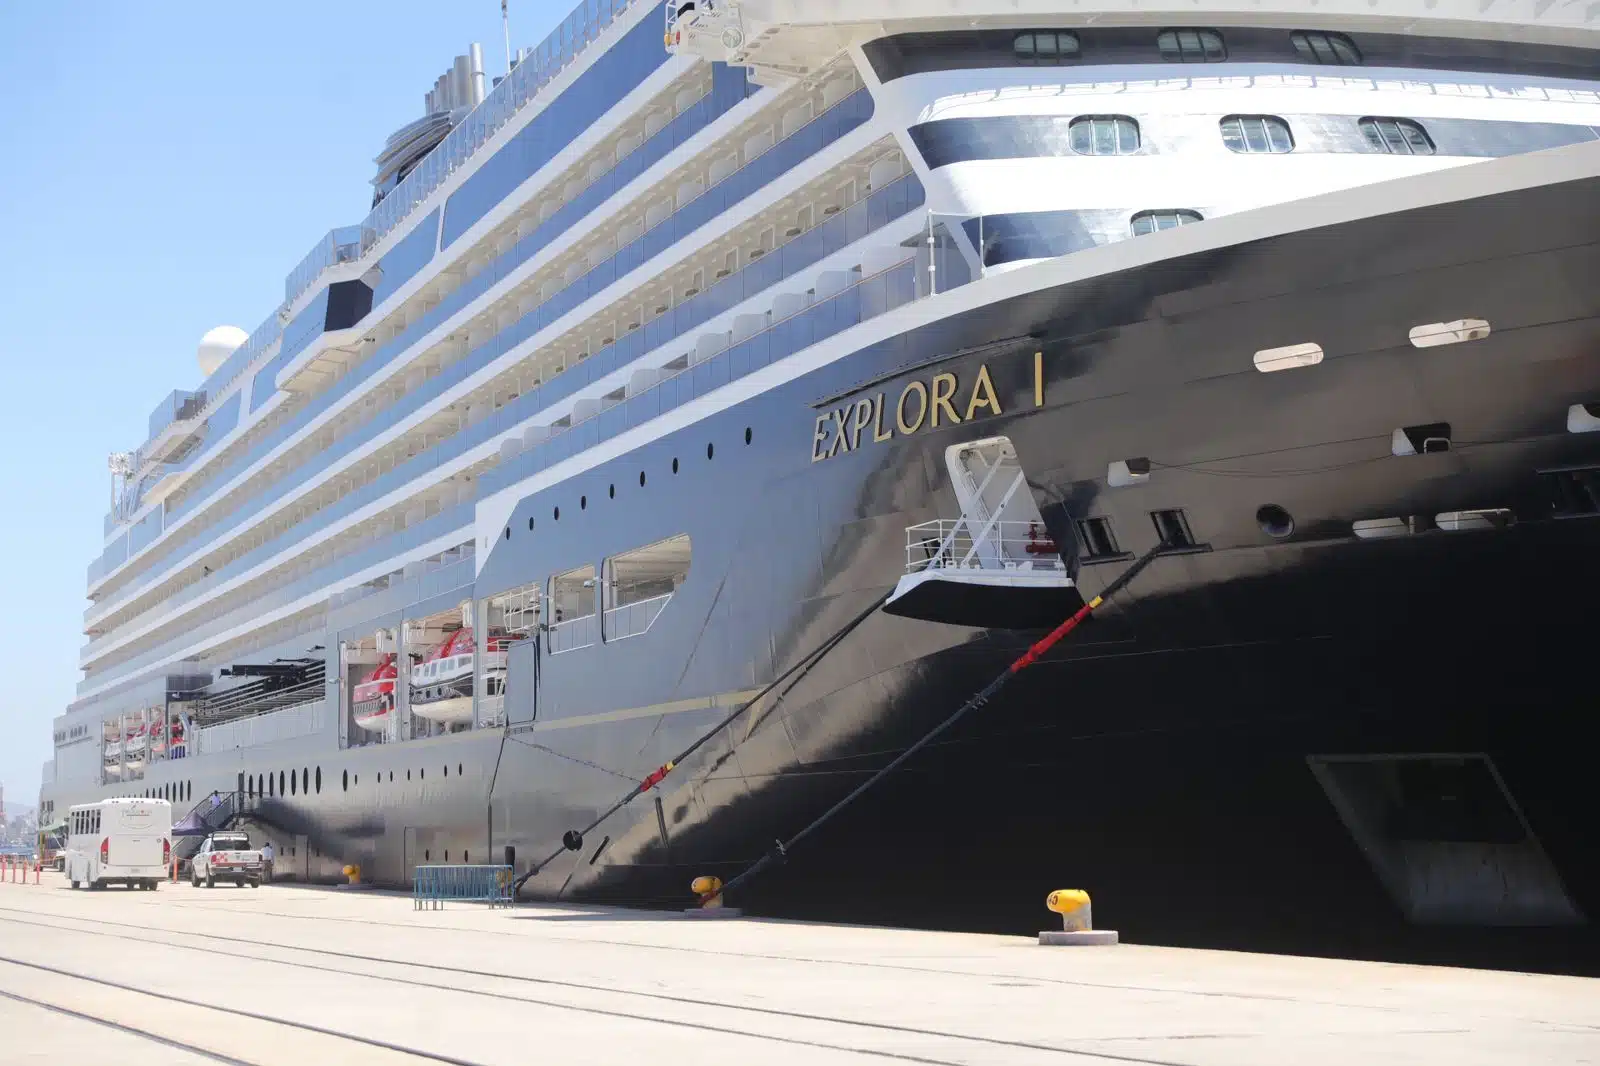 El crucero turístico “Explora I” llega por primera vez a Mazatlán